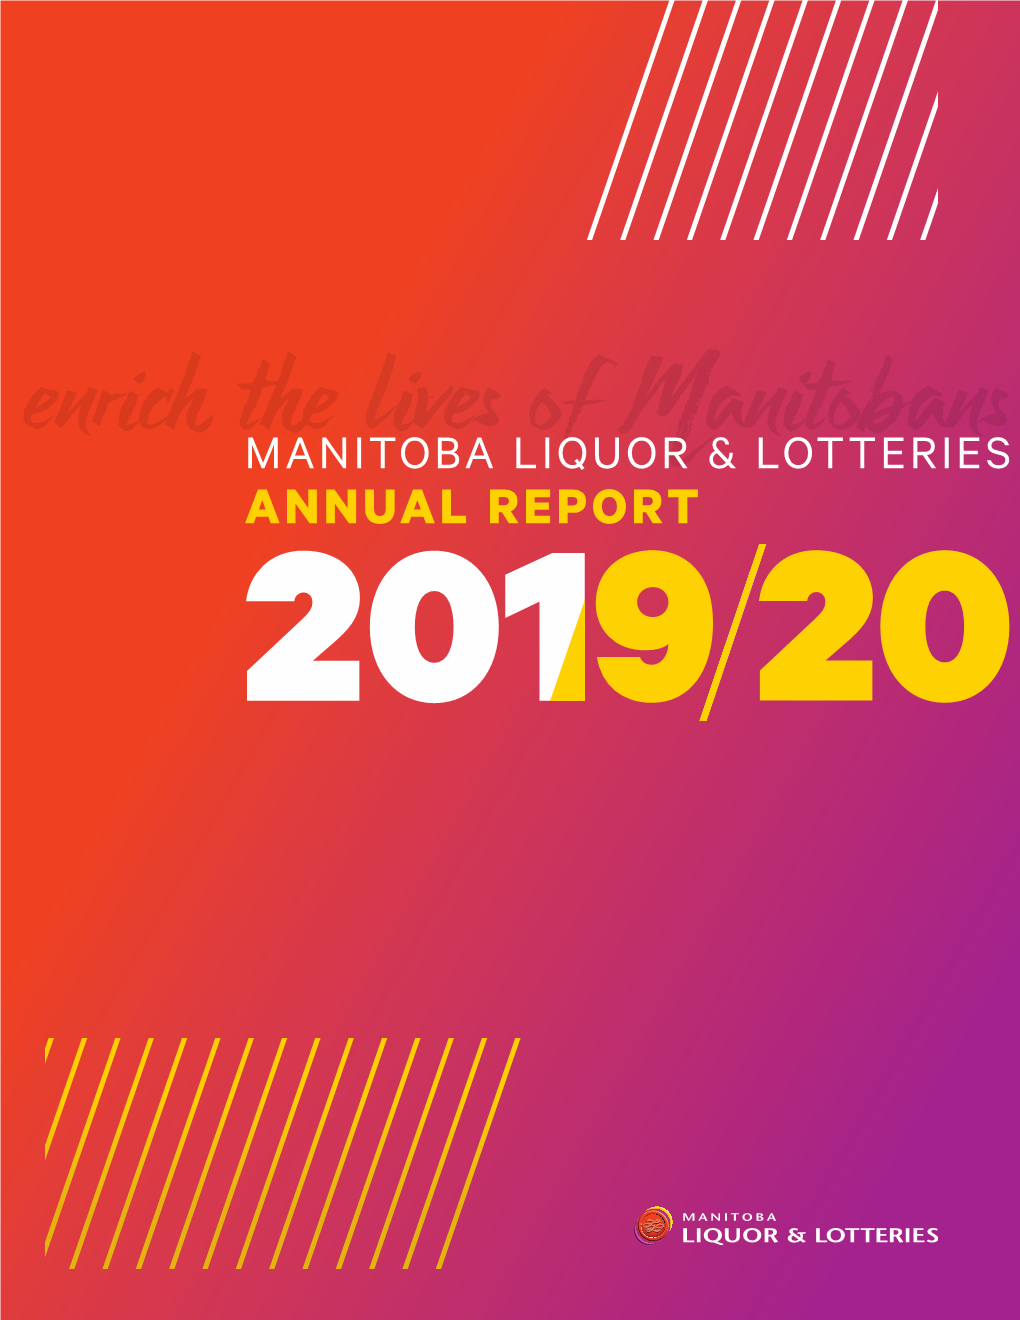 Manitoba Liquor & Lotteries 2019/20 Annual Report